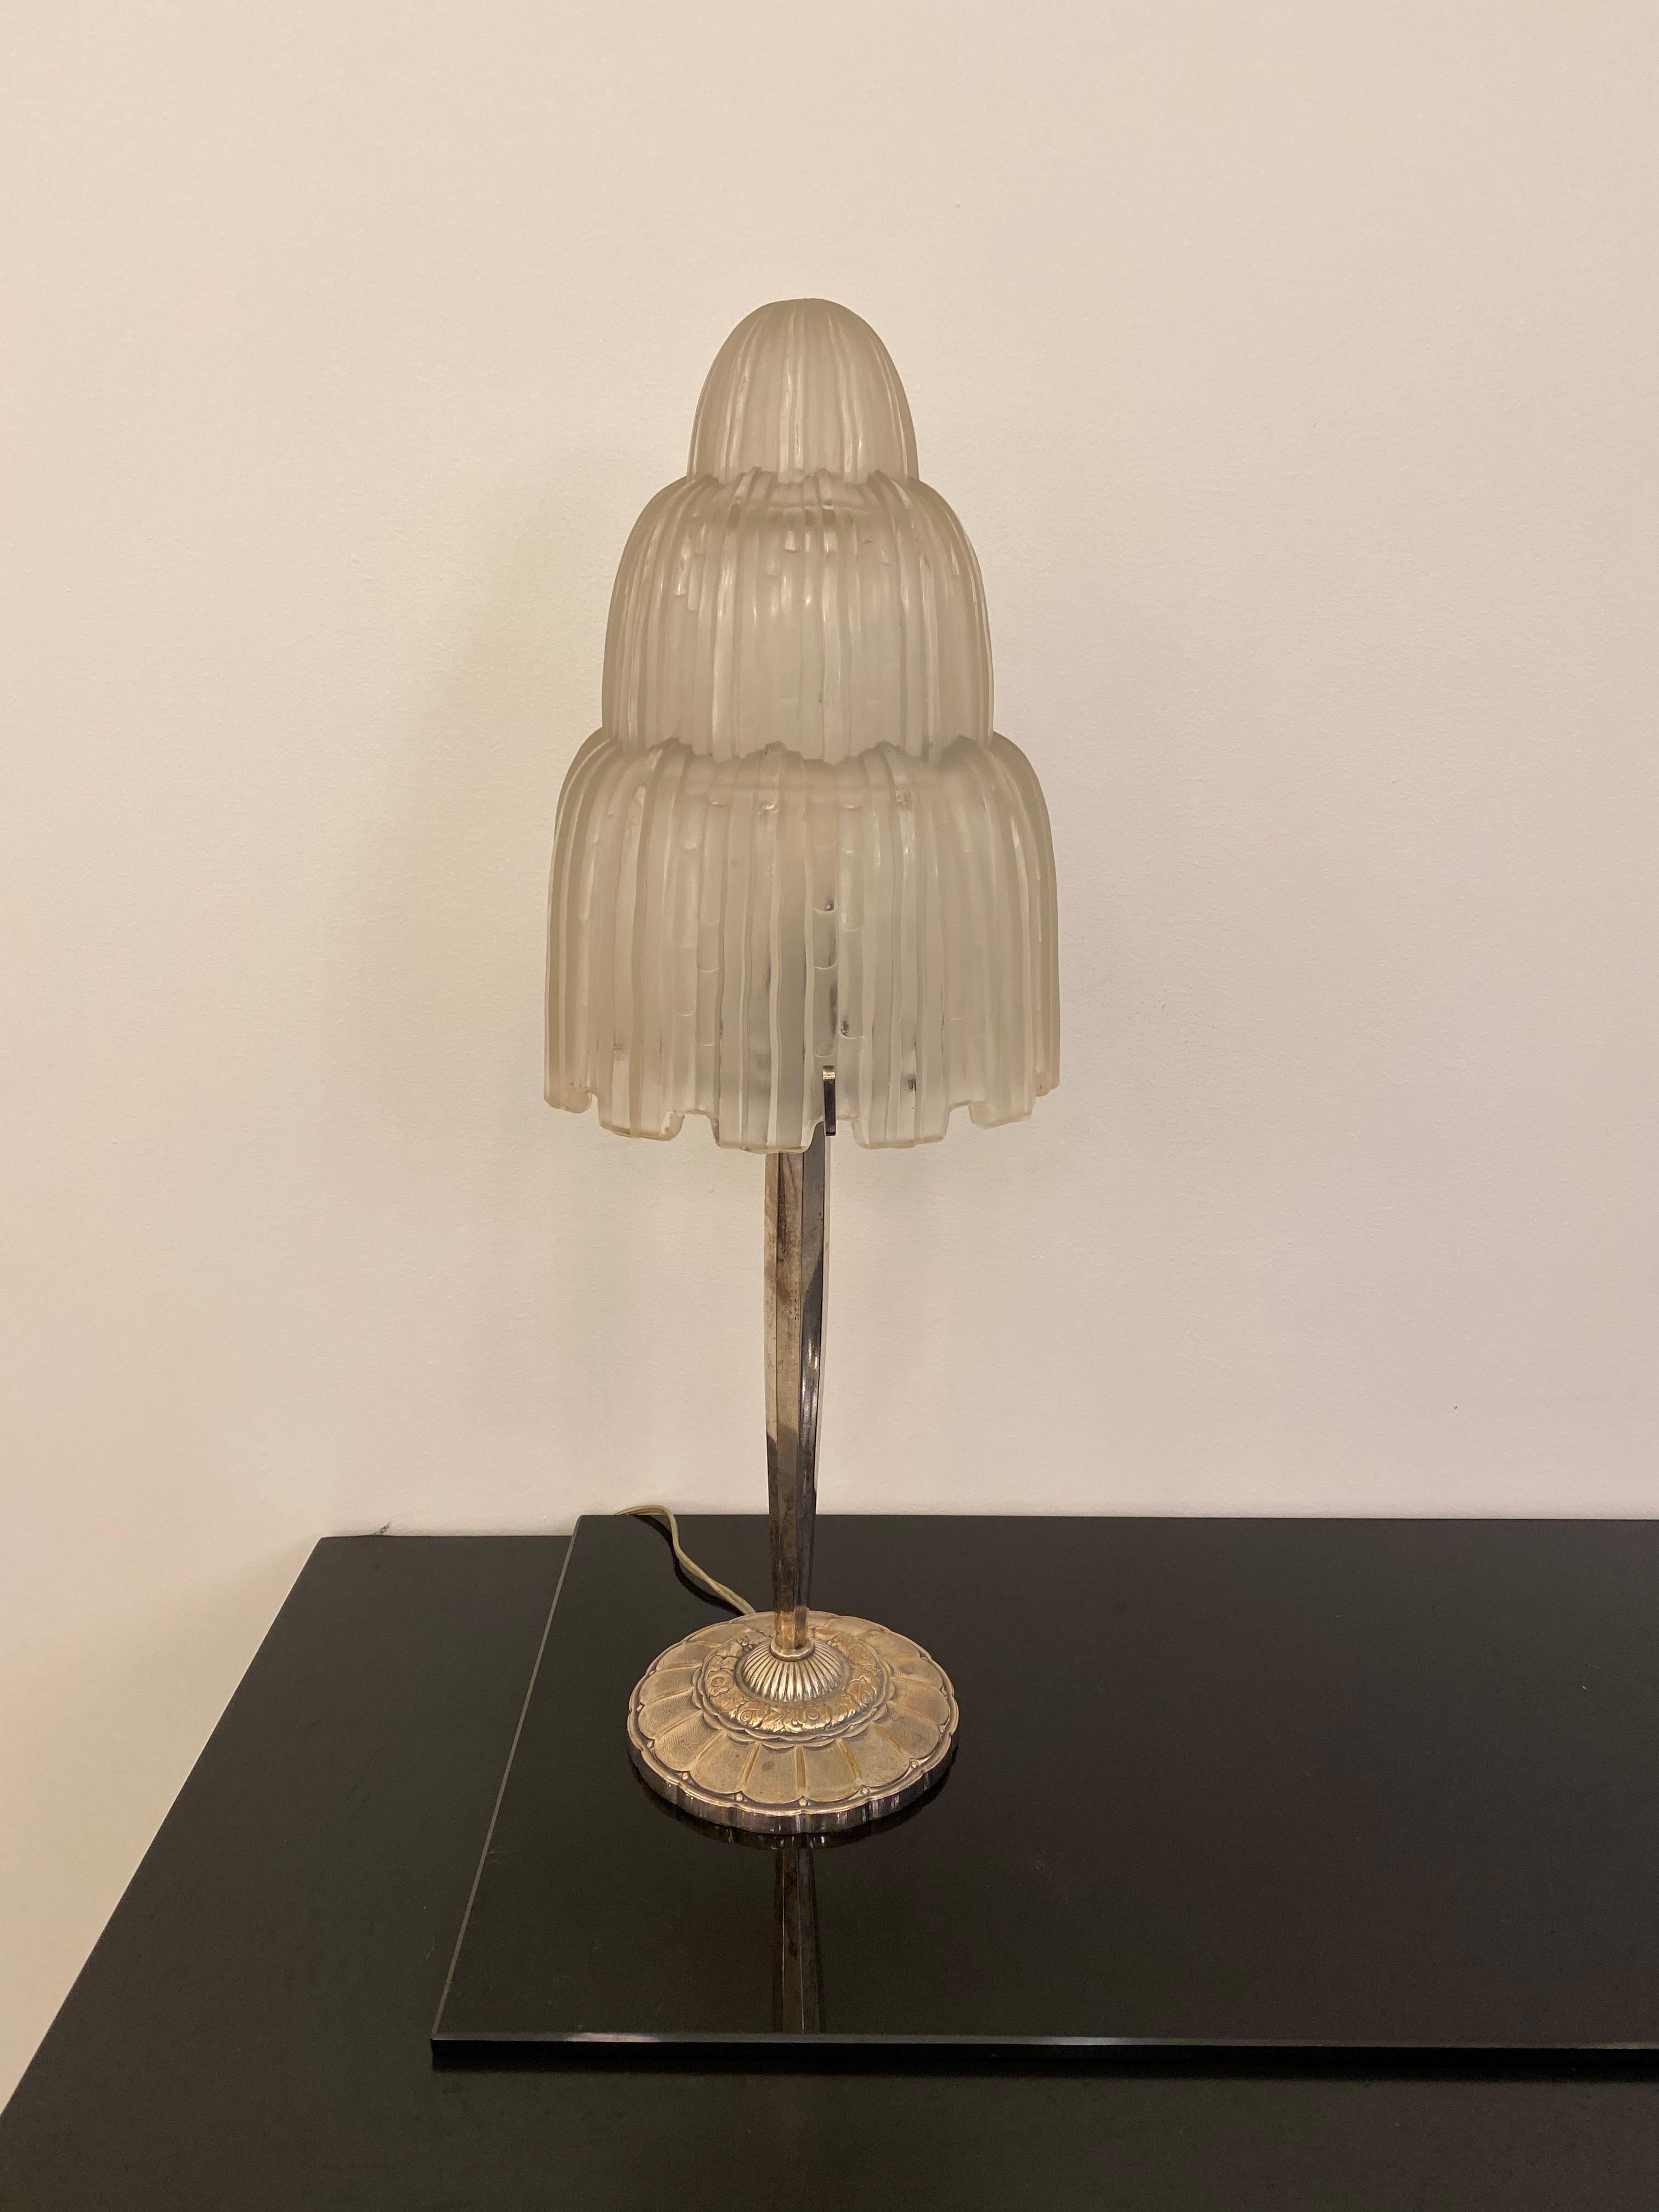 Magnifique paire de lampes de table Art Déco françaises créées par Marius Ernest Sabino, (1878-1961). Les abat-jour sont en verre dépoli transparent avec des détails polis appelés 